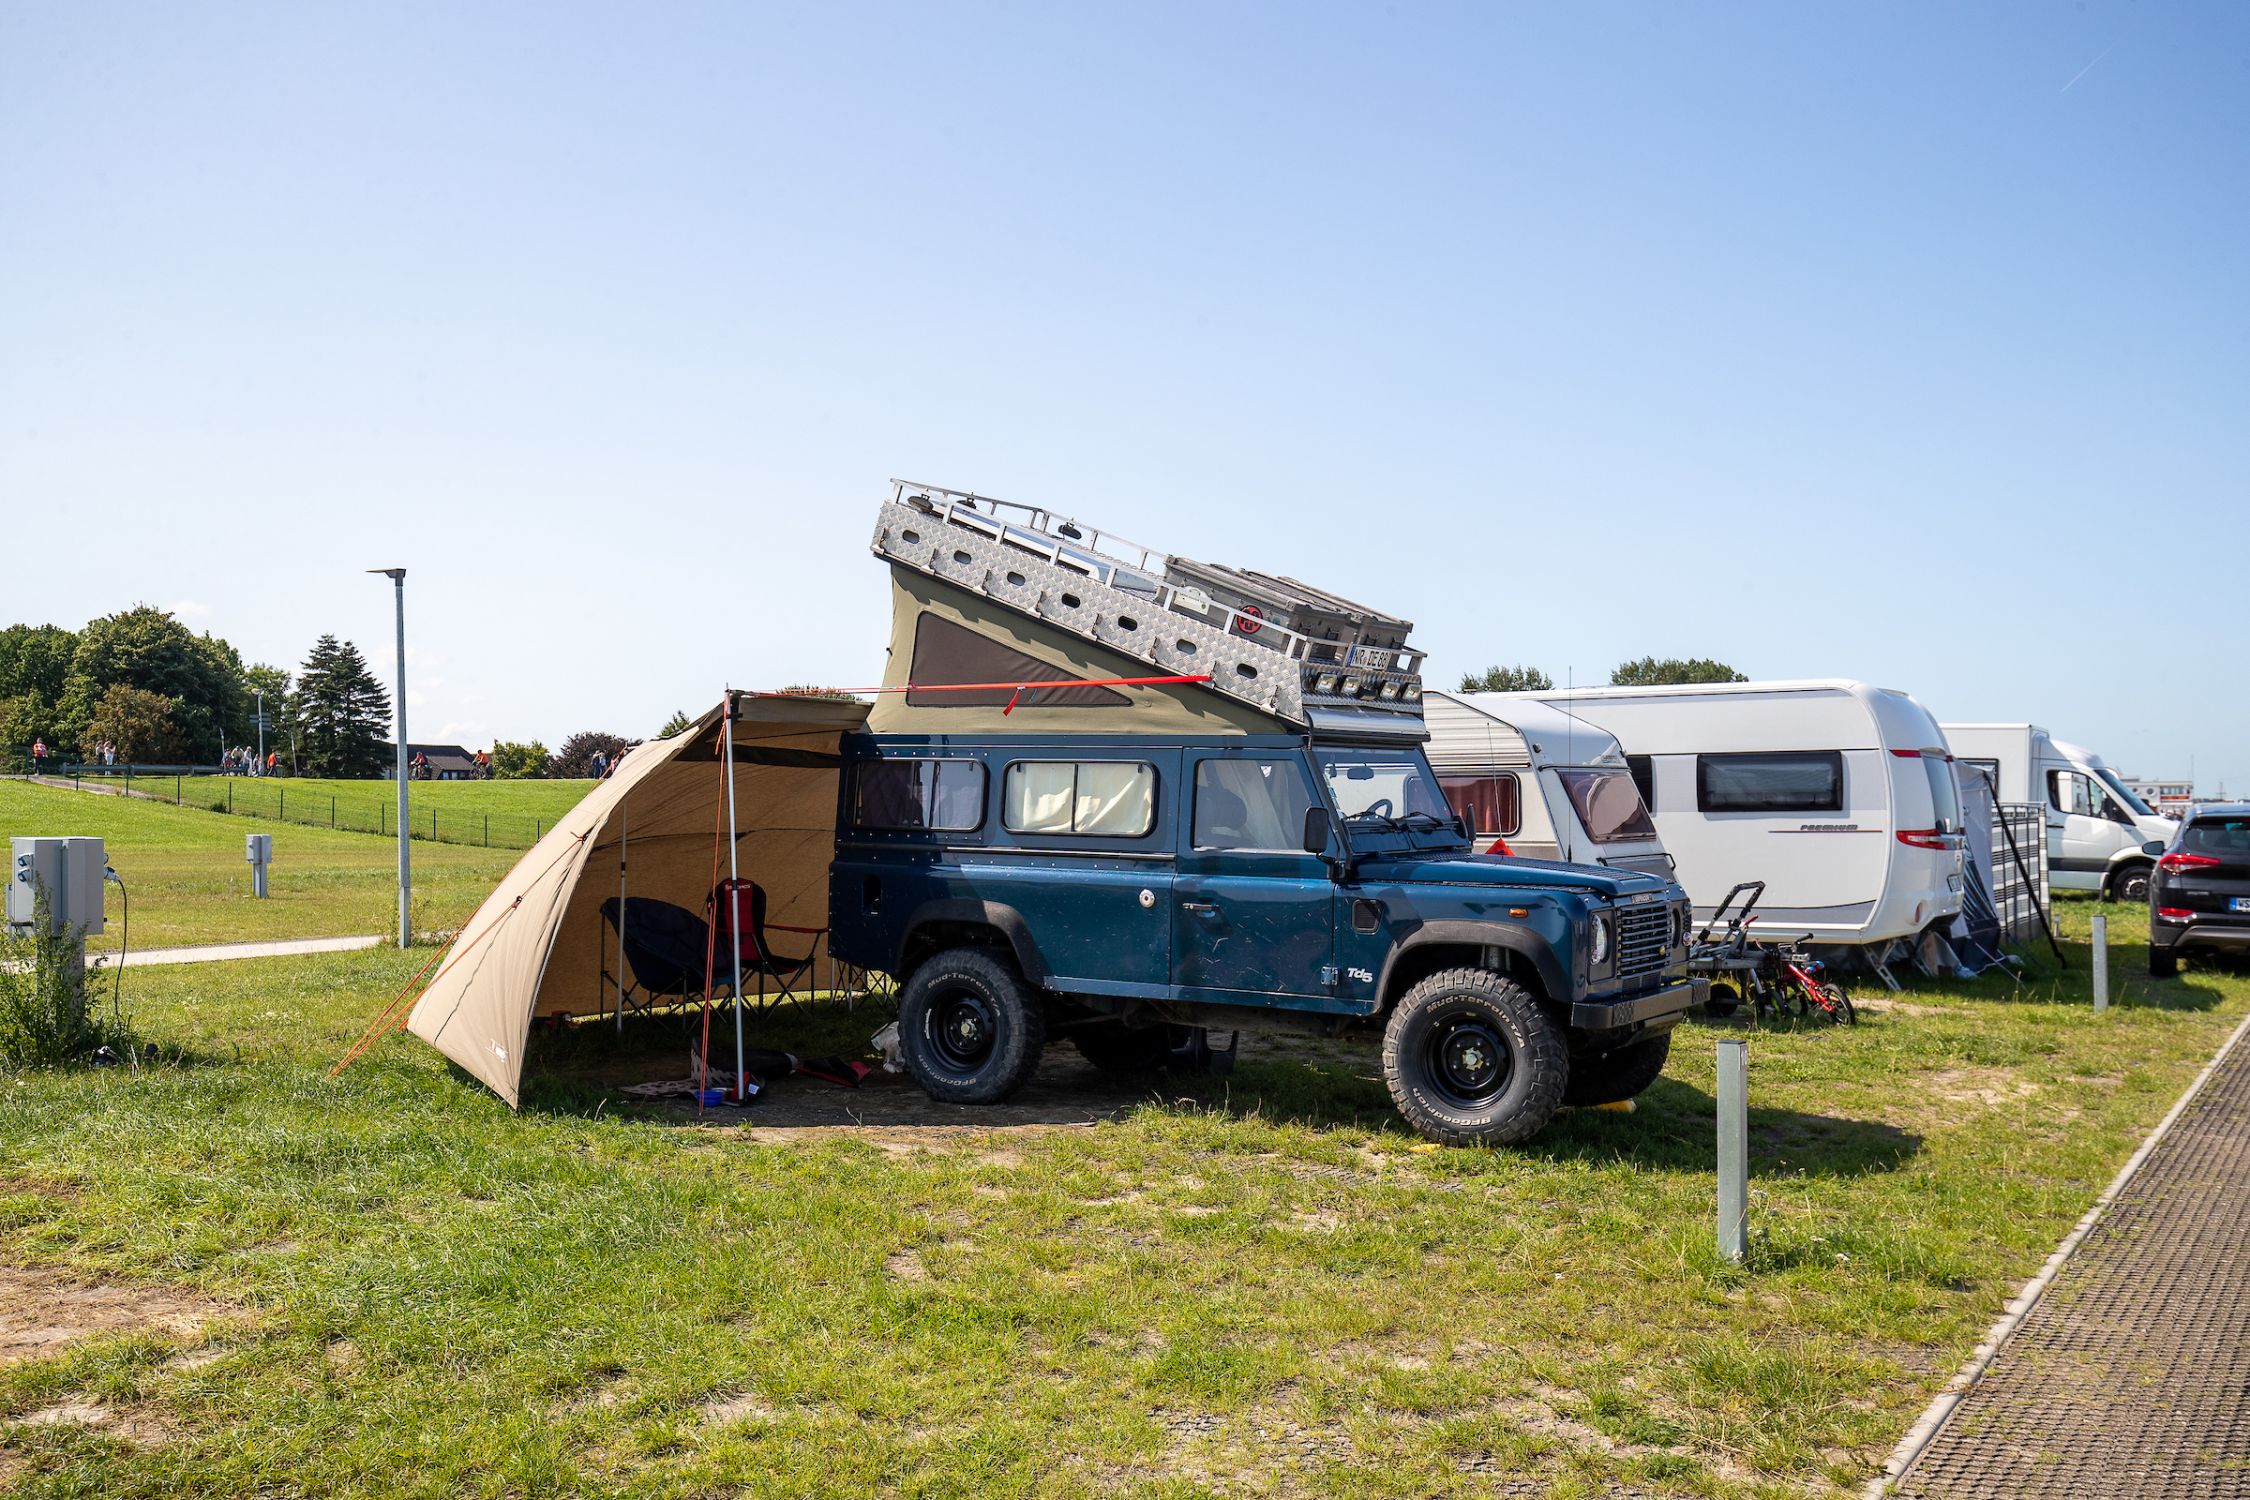 Campen mit dem umgebauten Auto in Dangast